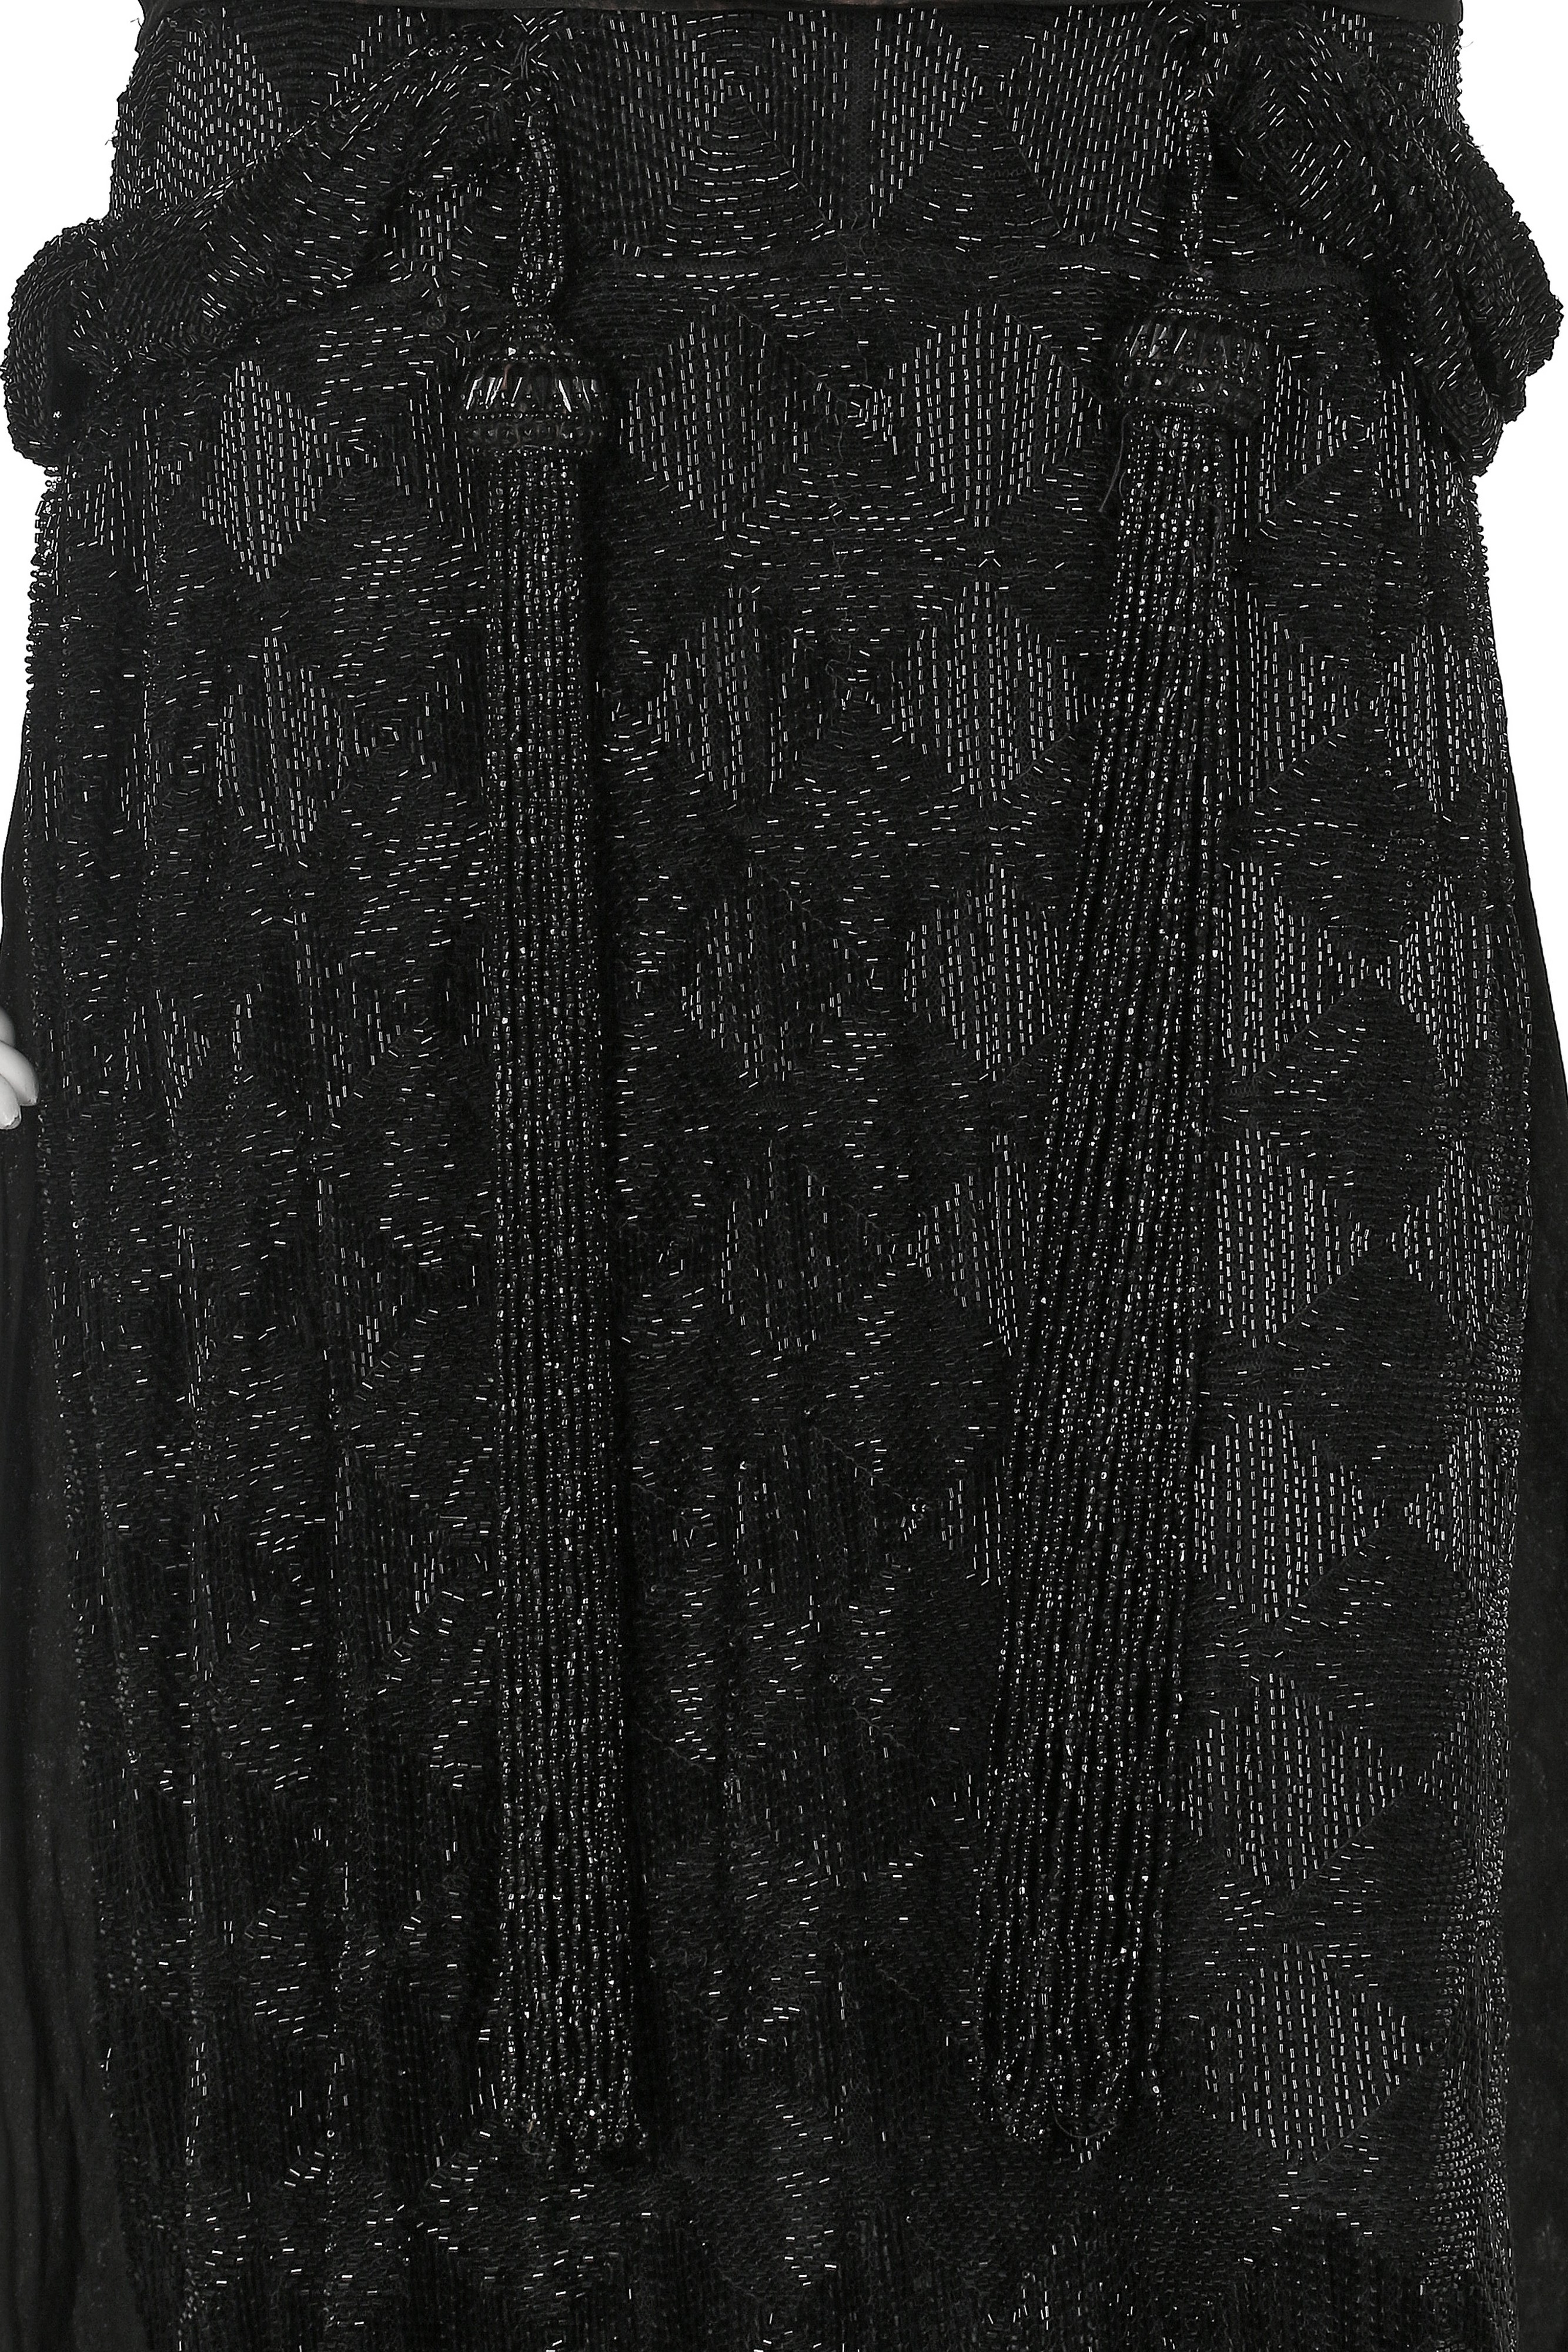 Chanel Little Black Dress - 54 For Sale on 1stDibs